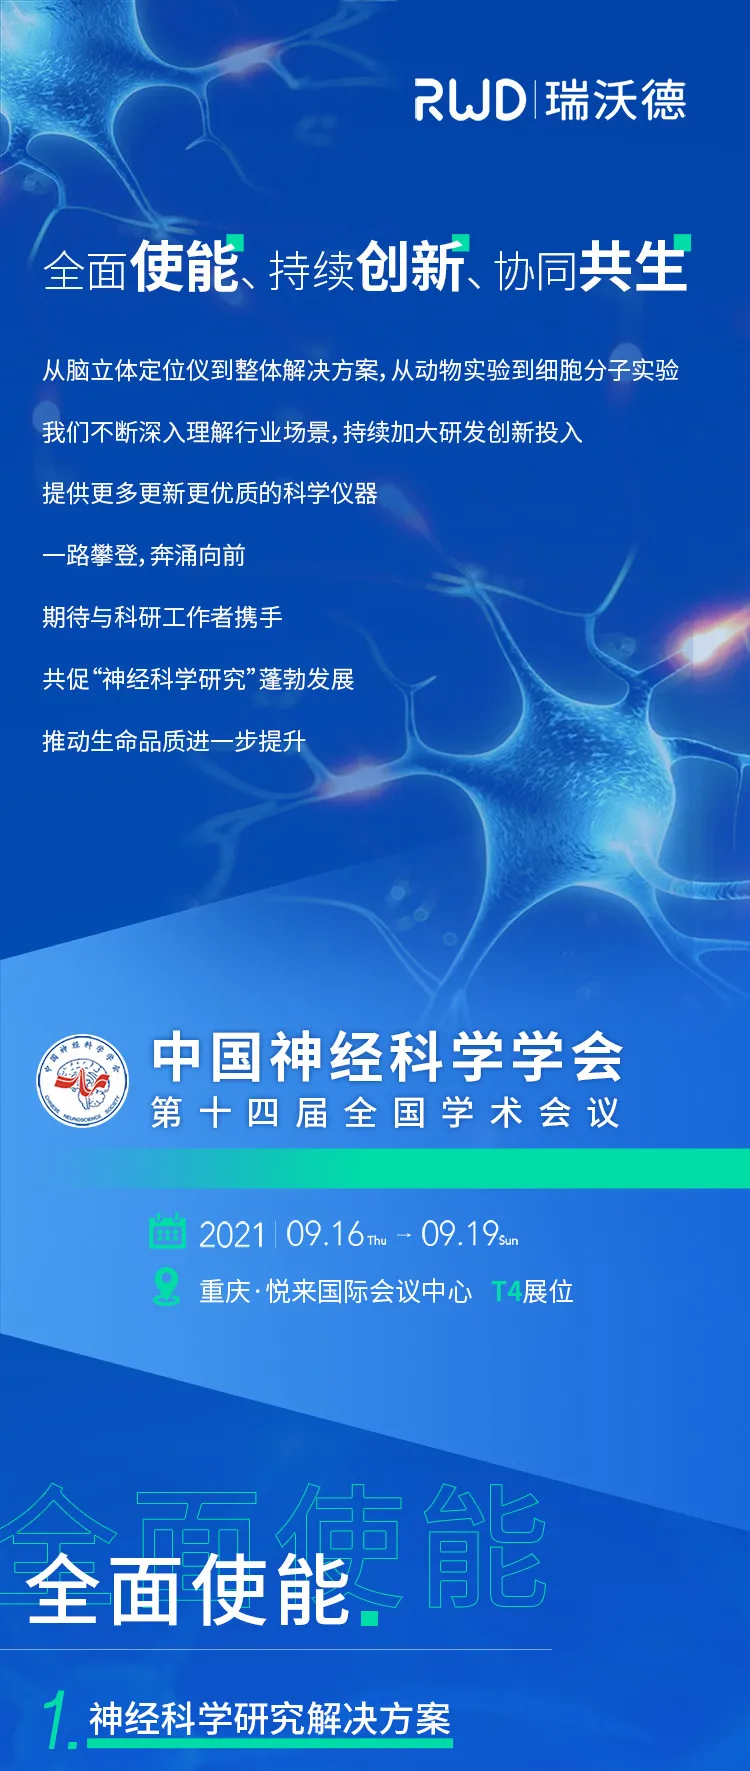 会议<em>邀请</em>︱瑞沃德<em>与您相约</em>中国神经科学学会第十四届全国学术会议